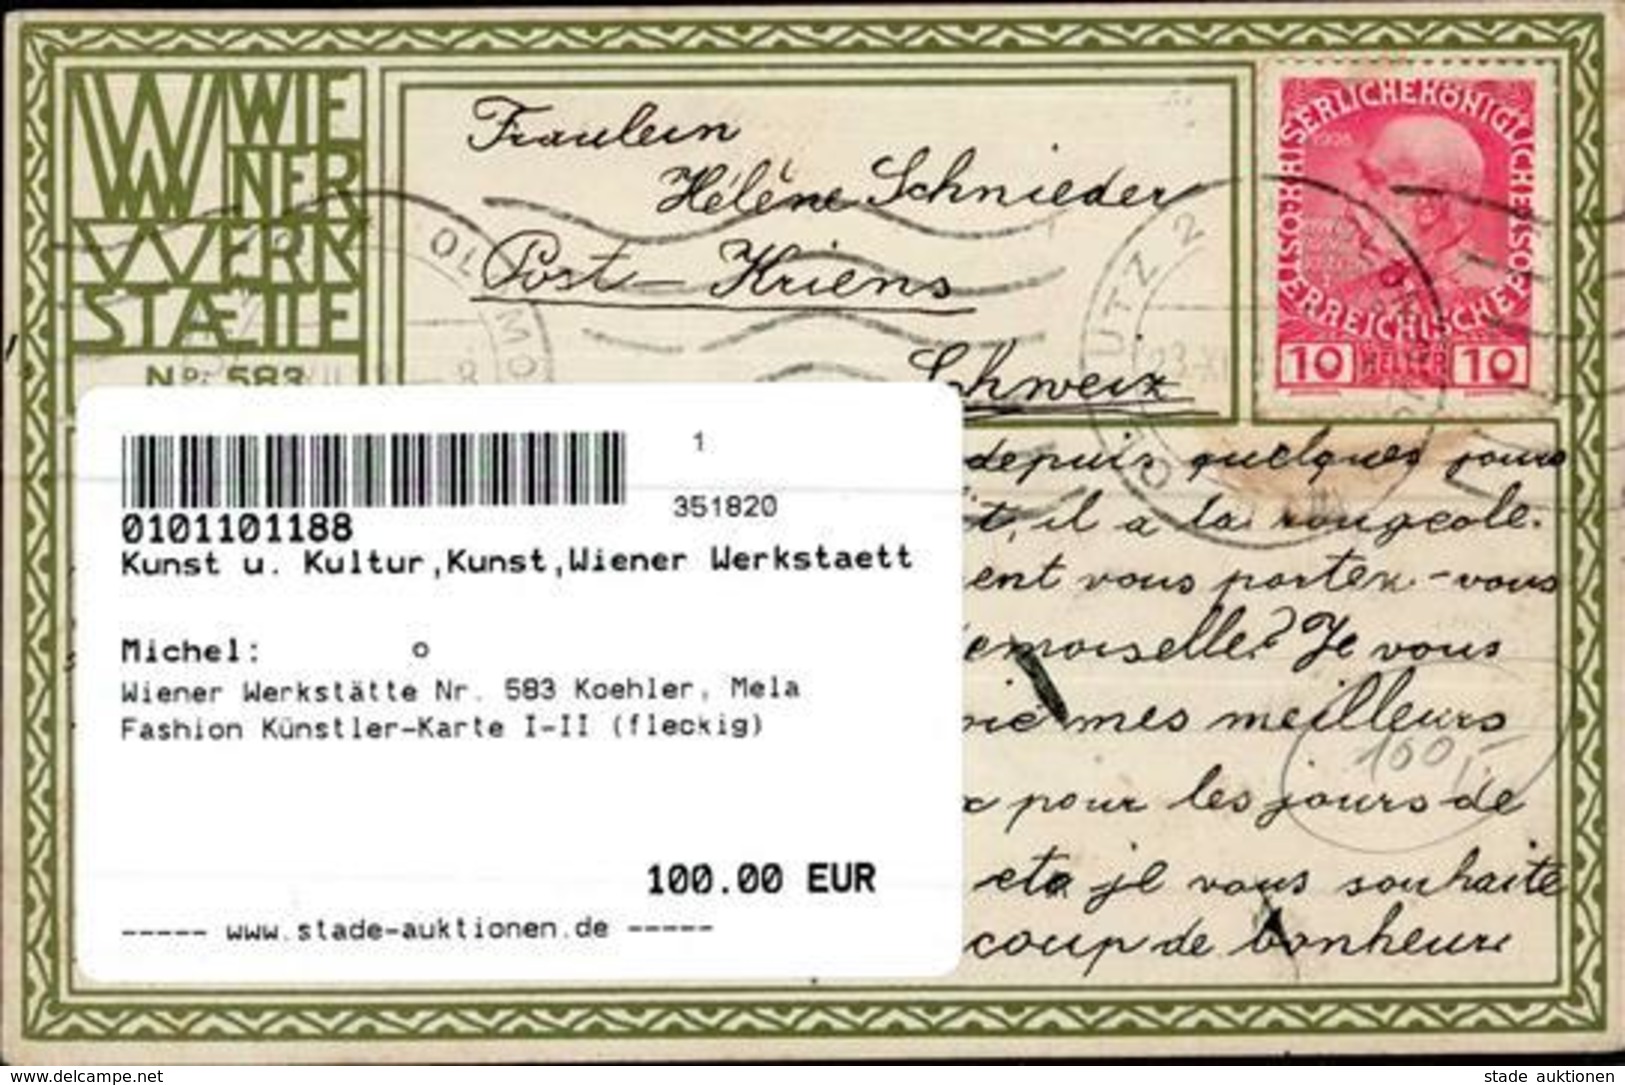 Wiener Werkstätte Nr. 583 Koehler, Mela Fashion Künstler-Karte I-II (fleckig) - Kokoschka